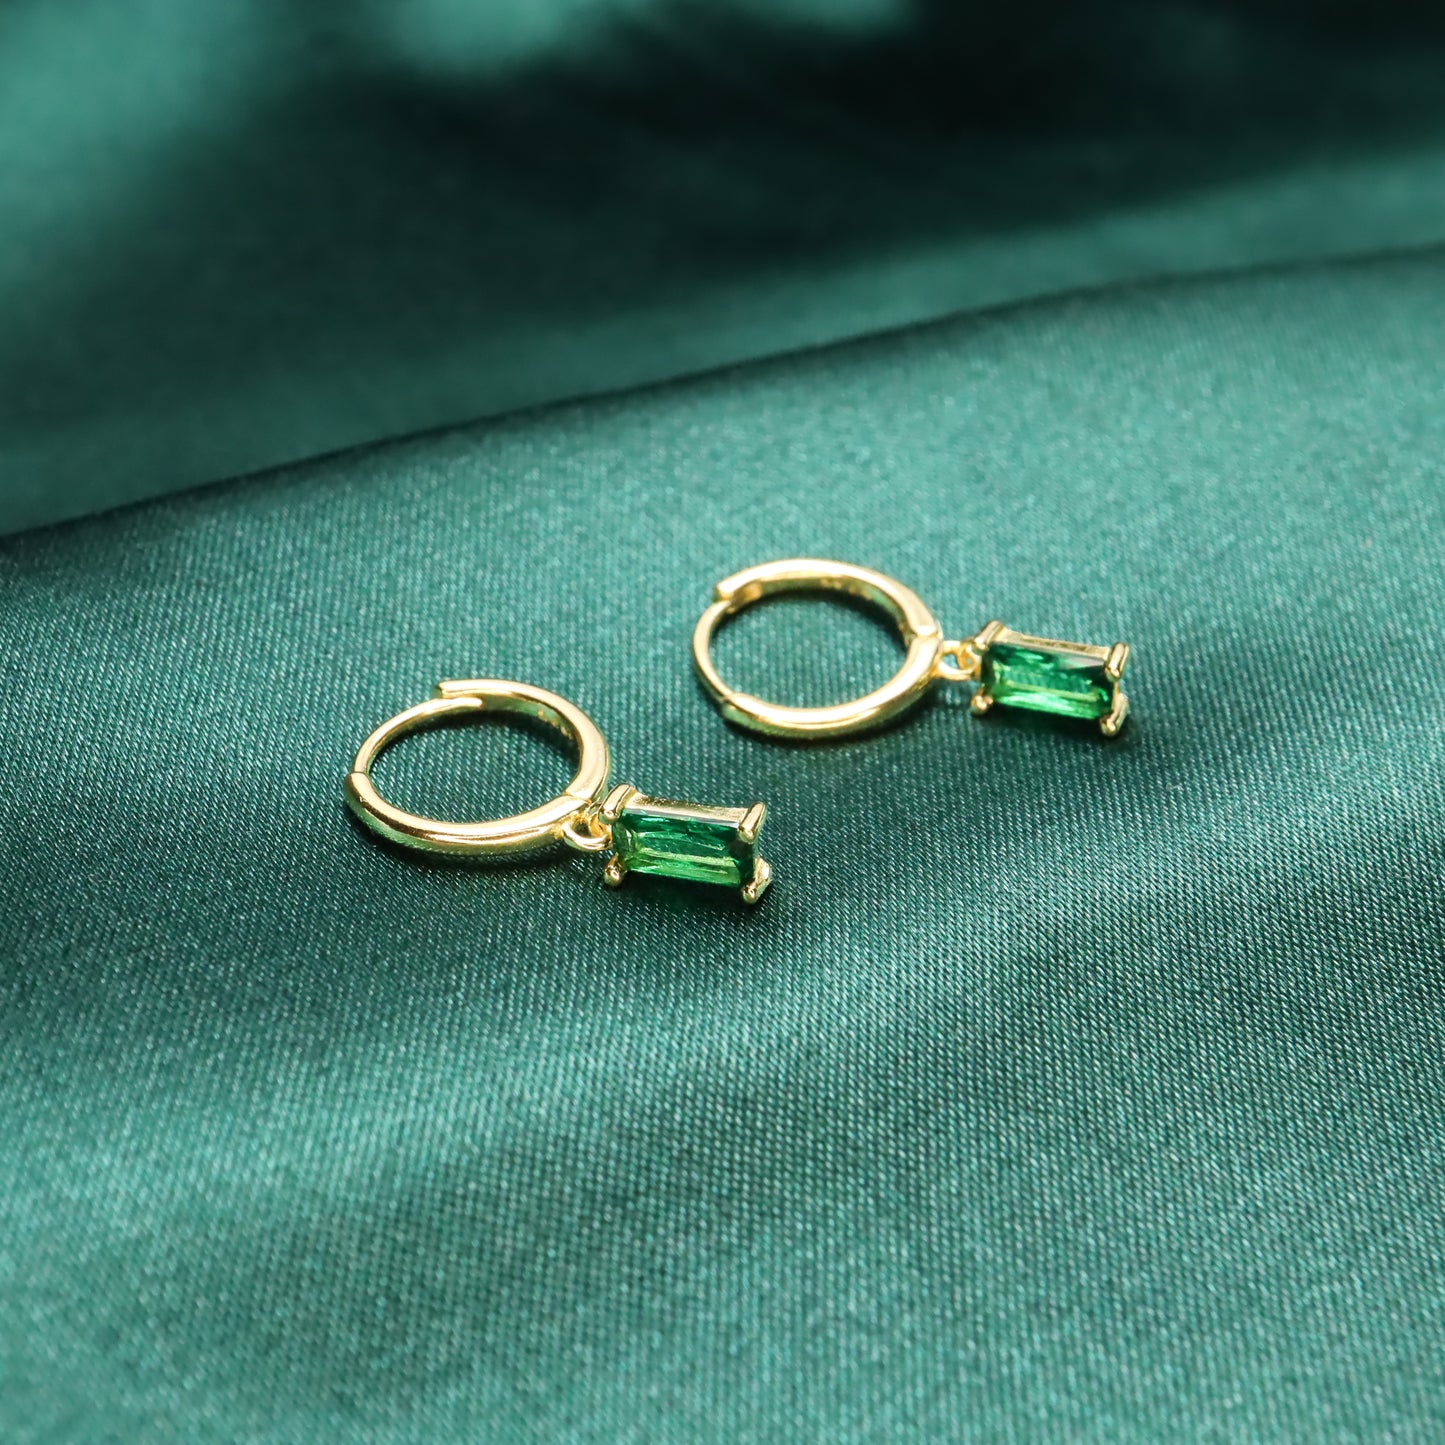 Alice Wish Stone - Vintage Baguette Charm Zircon S925 Sterling Silver Hoop Earrings (Green)